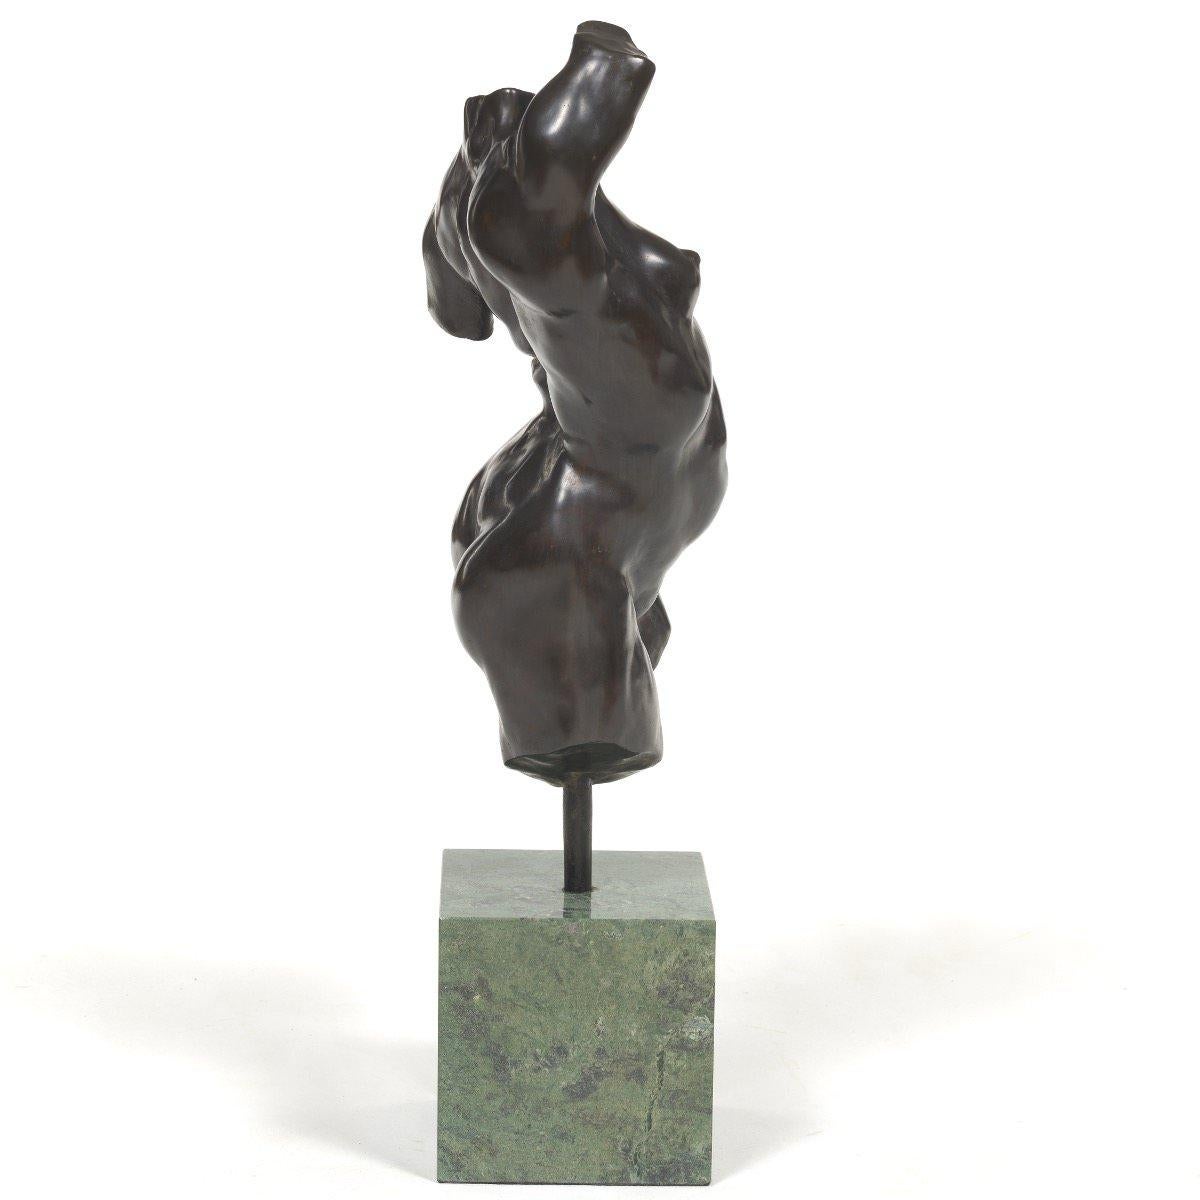 Alan Cottrill (américain, Ohio, né en 1952)
Torse féminin nu, 1994
Bronze monté sur un socle en marbre vert
Signé, daté et numéroté 14/20 au verso de la jambe, avec le cachet de la fonderie
17. in. h. x 6 in. w. x 6 in. d.
25.5 in. h. x 6 in. w. x 6